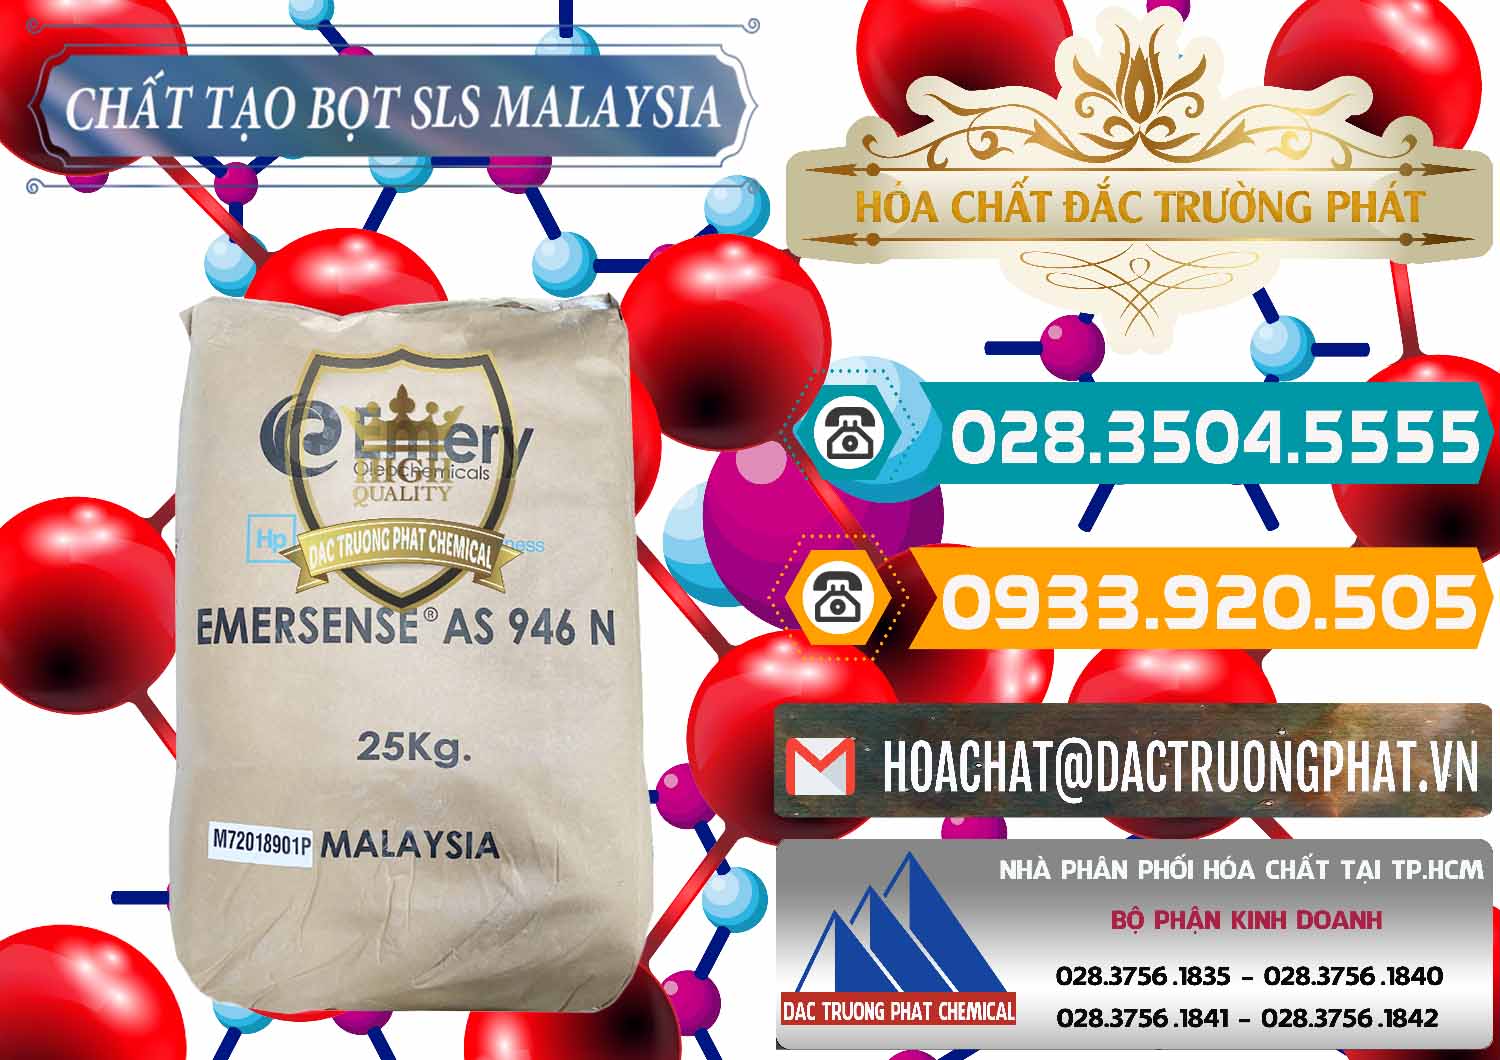 Nhà cung cấp - bán Chất Tạo Bọt SLS Emery - Emersense AS 946N Mã Lai Malaysia - 0423 - Cty phân phối và bán hóa chất tại TP.HCM - congtyhoachat.vn